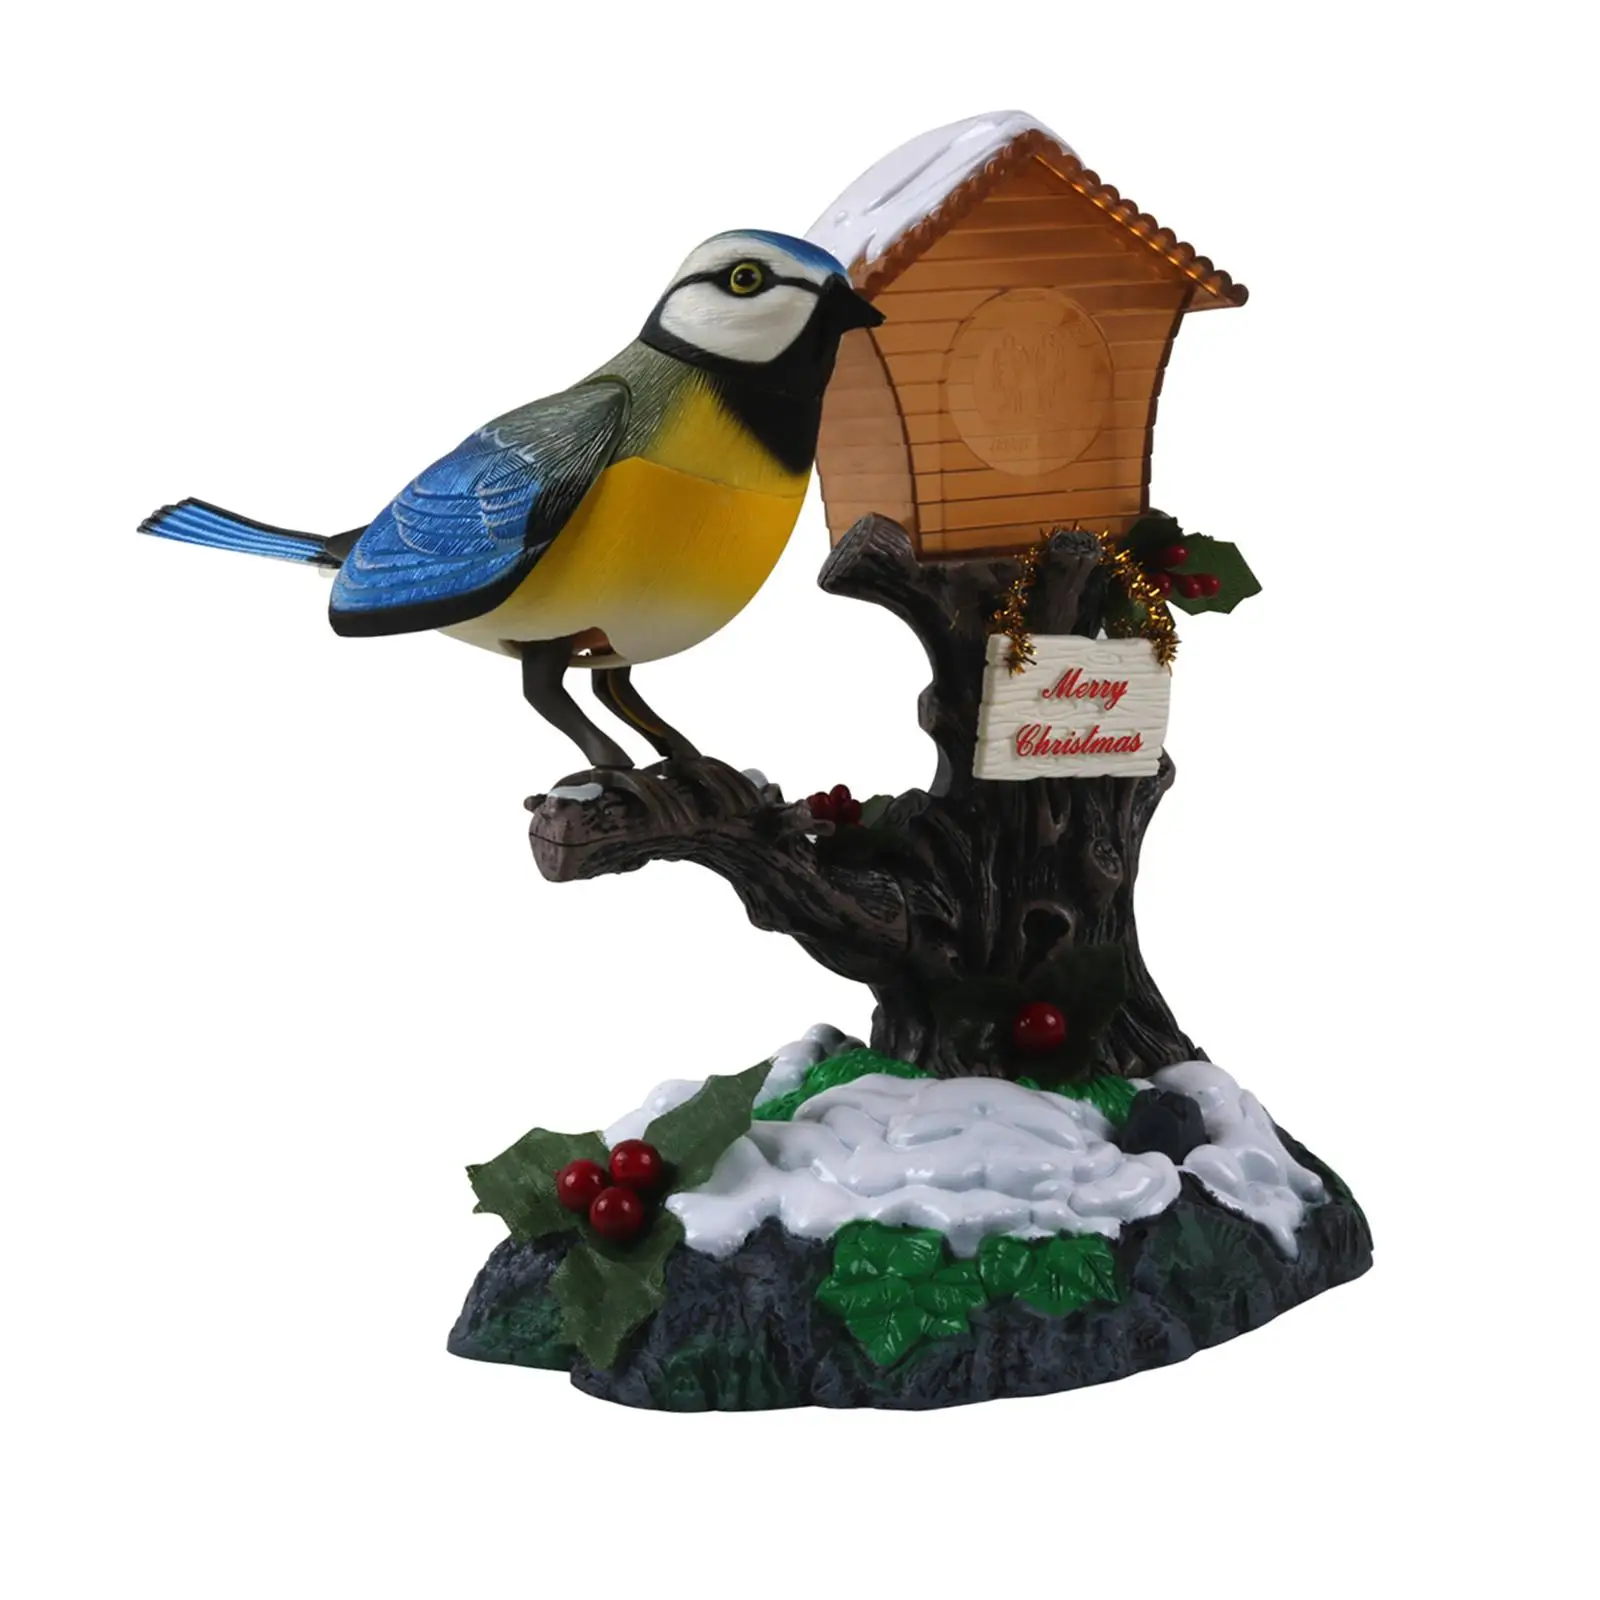 Talking Sound Control Bird Toy Office Garden Party Creative Gift Home Decor